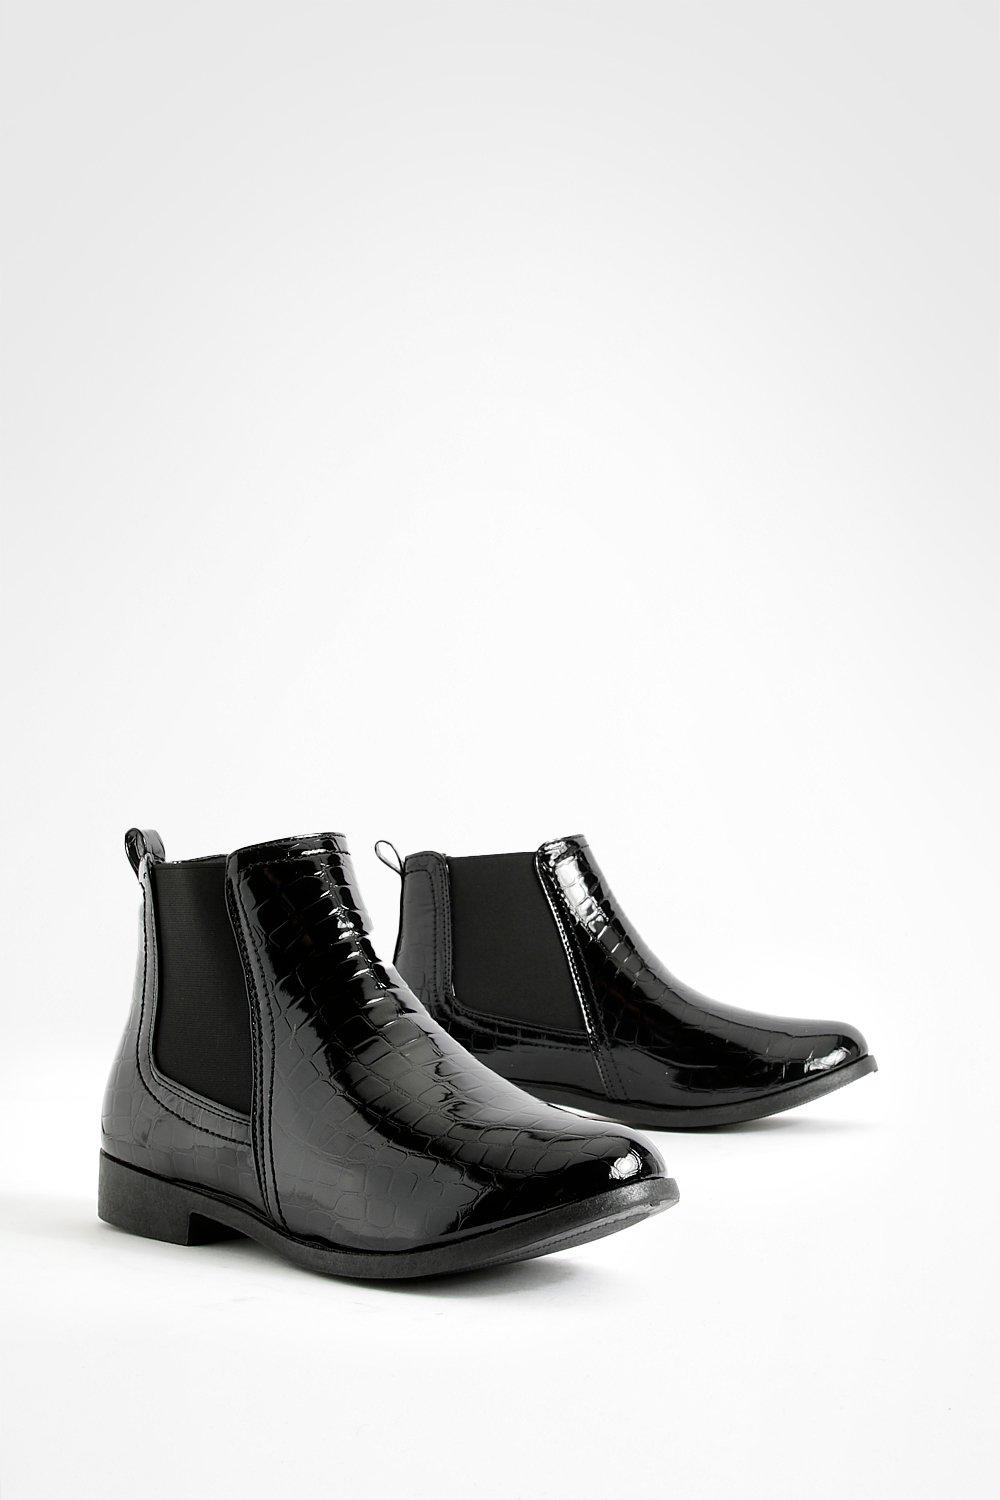 Womens Wide Fit Croc Chelsea Boots - Black - 8, Black